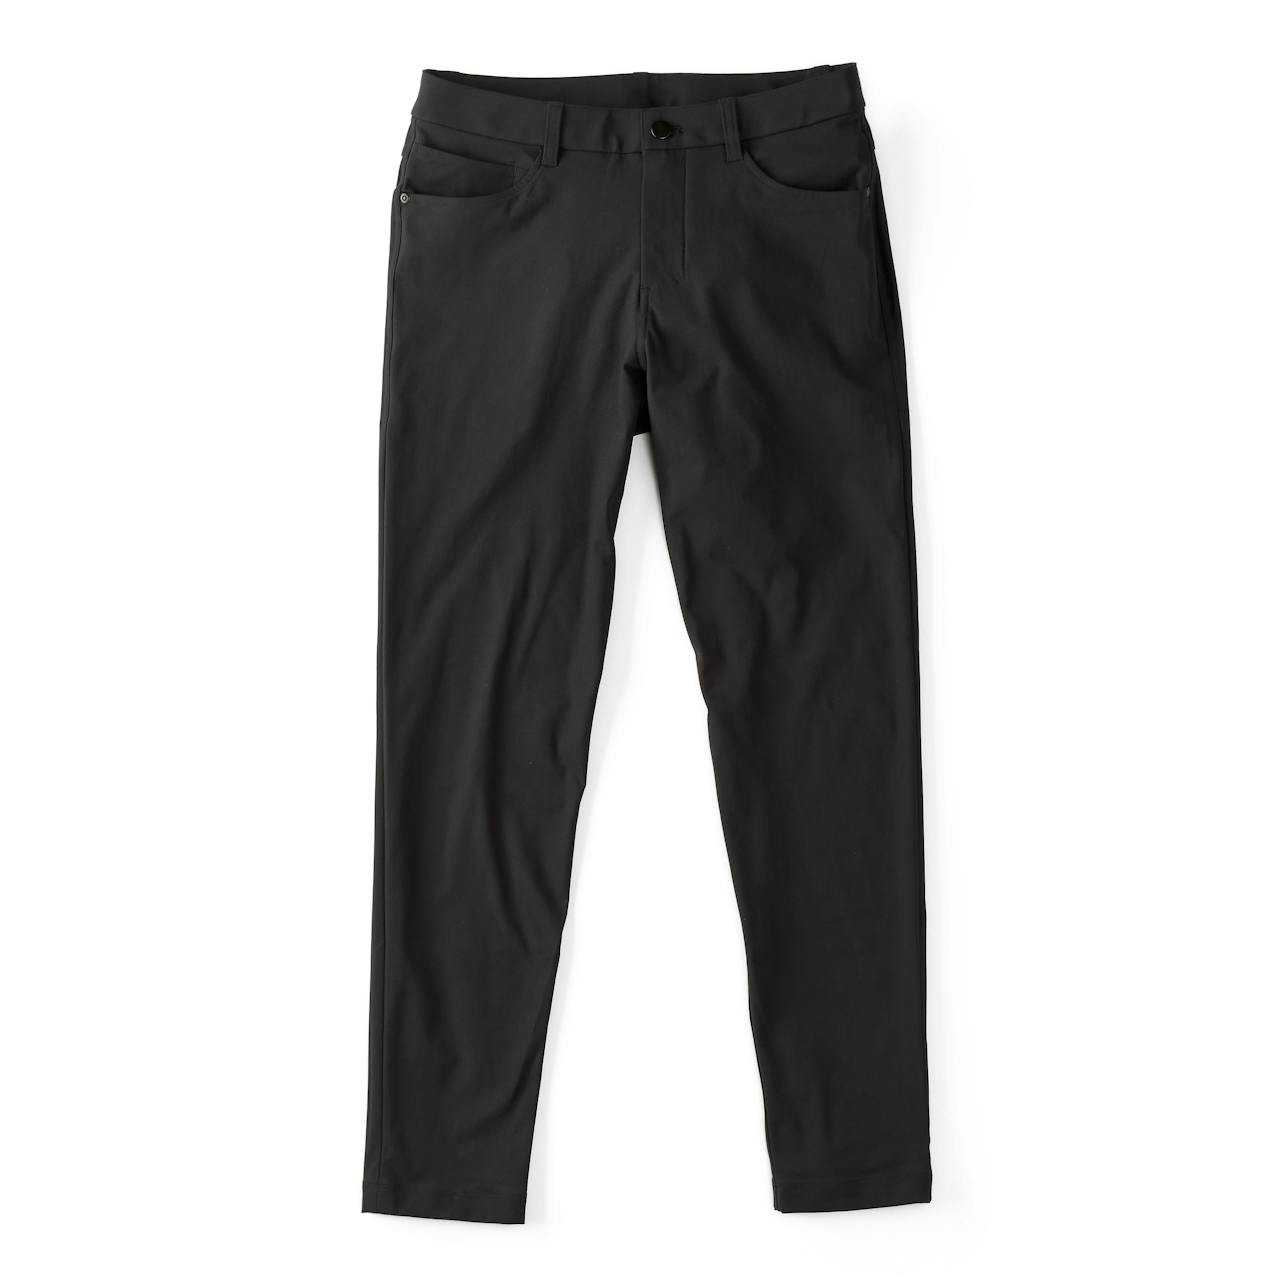 ABC Slim-Fit Trouser 34L *Warpstreme, Men's Trousers, lululemon